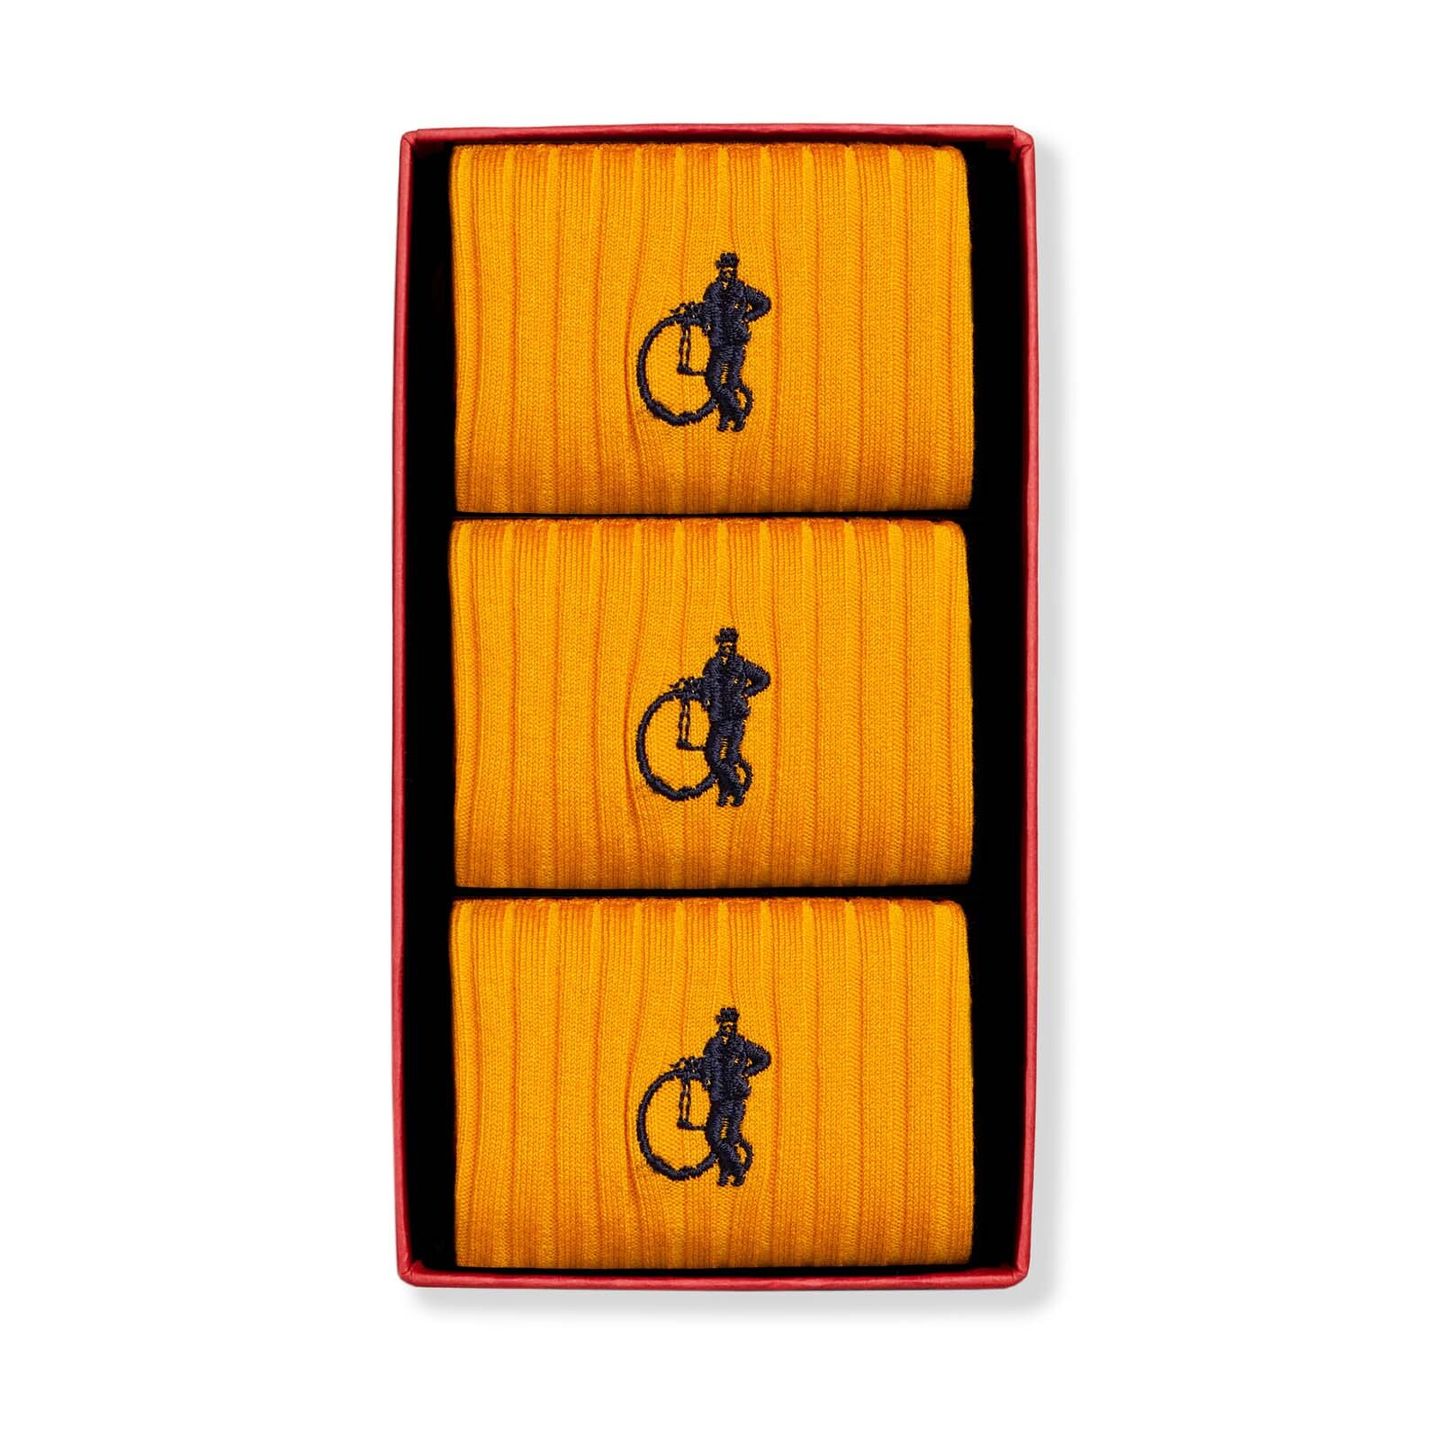 Trio box of saffron yellow socks